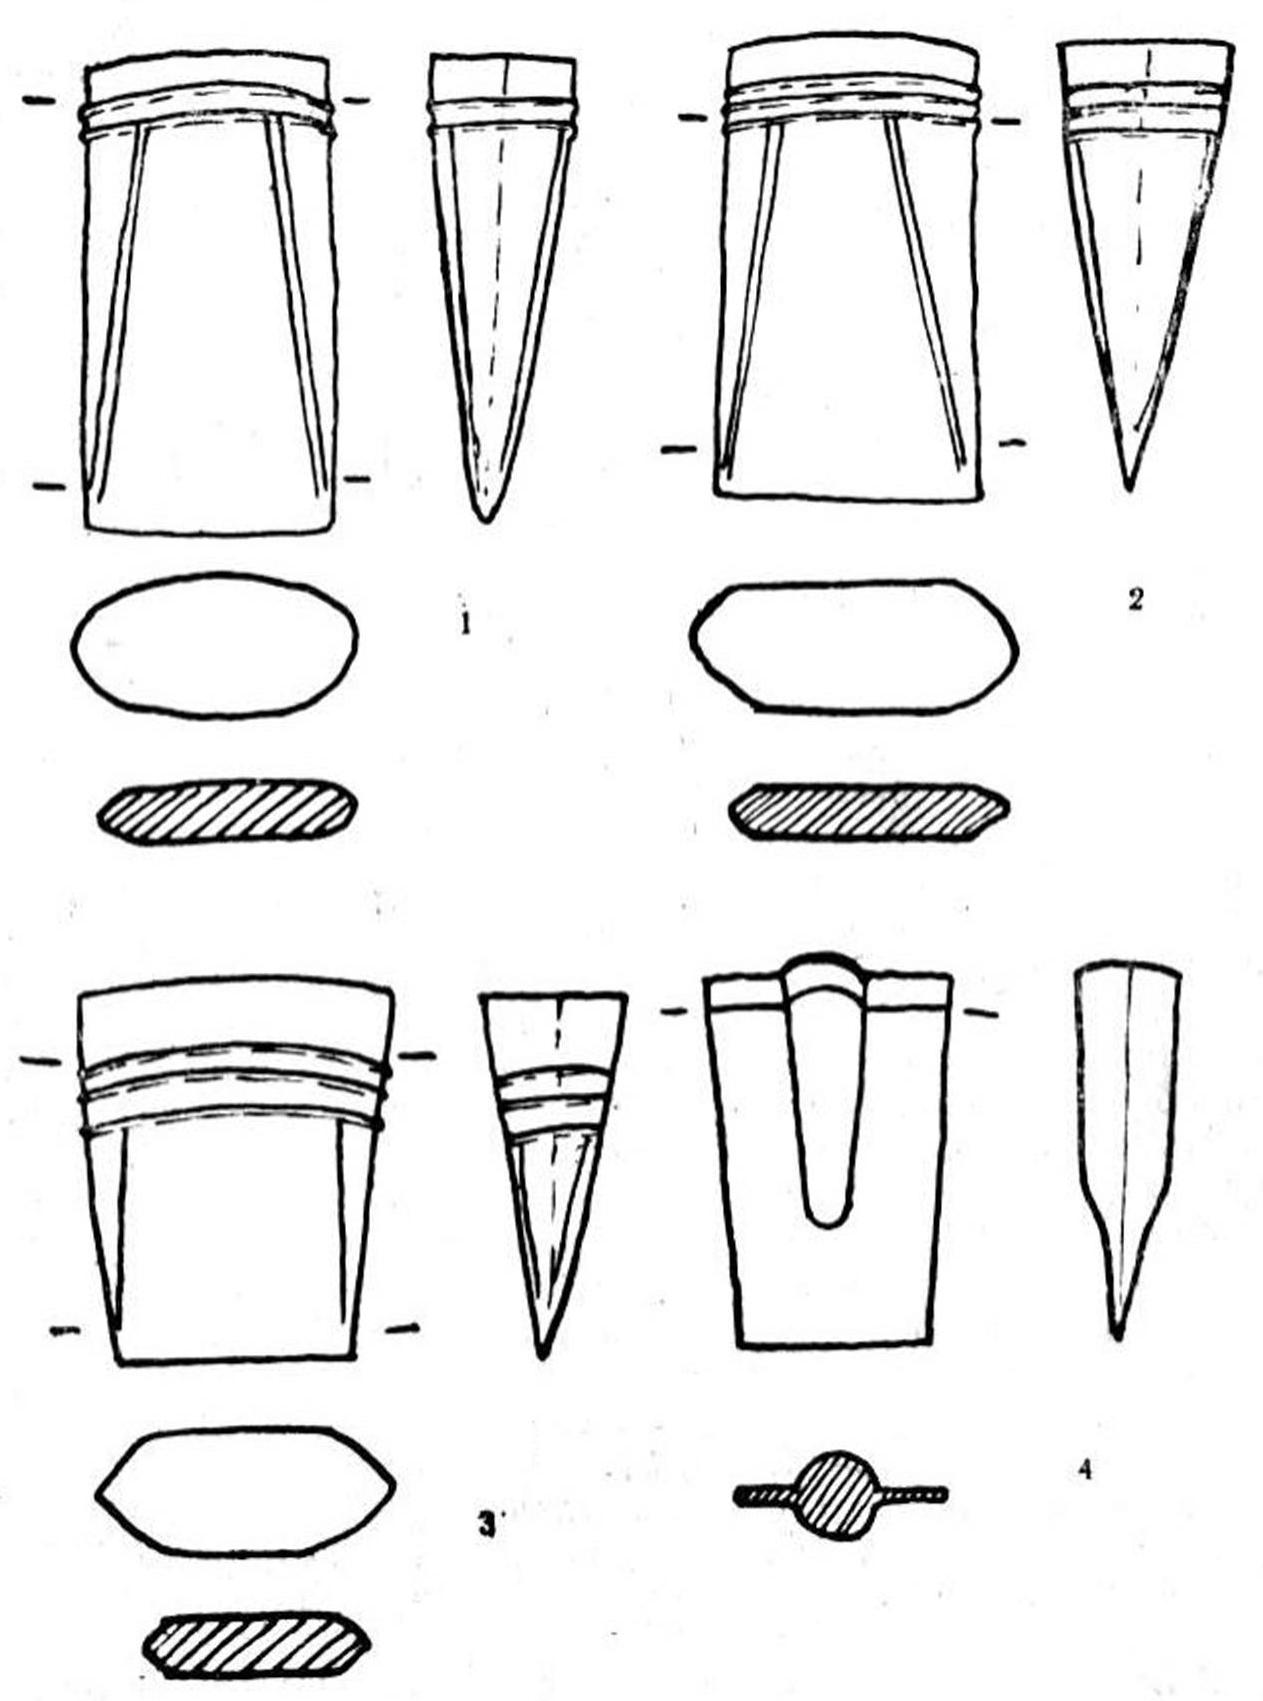 Рис 16. Кельты турбинского типа (1—3) и лопата-кельт (4) с поселения Самусь IV (отливки, сделанные по формам).